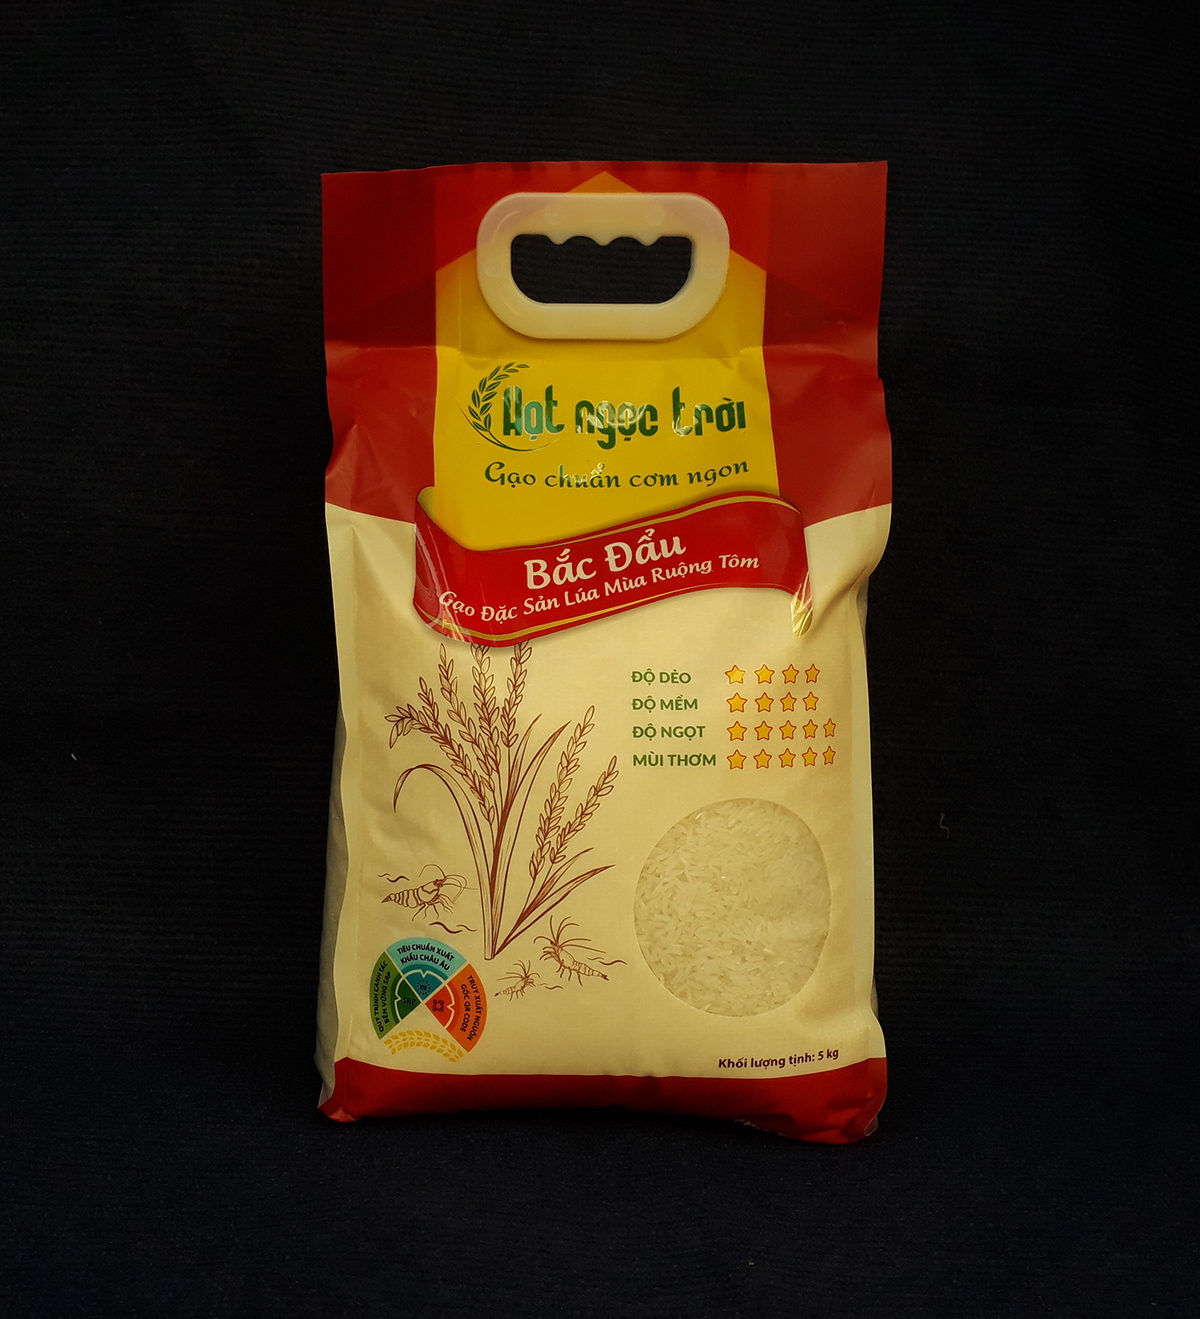 Đặc sản An Giang - Gạo Hạt Ngọc Trời Bắc Đẩu Túi 5kg - Gạo Đặc Sản Lúa Mùa Ruộng Tôm - OCOP 4 Sao